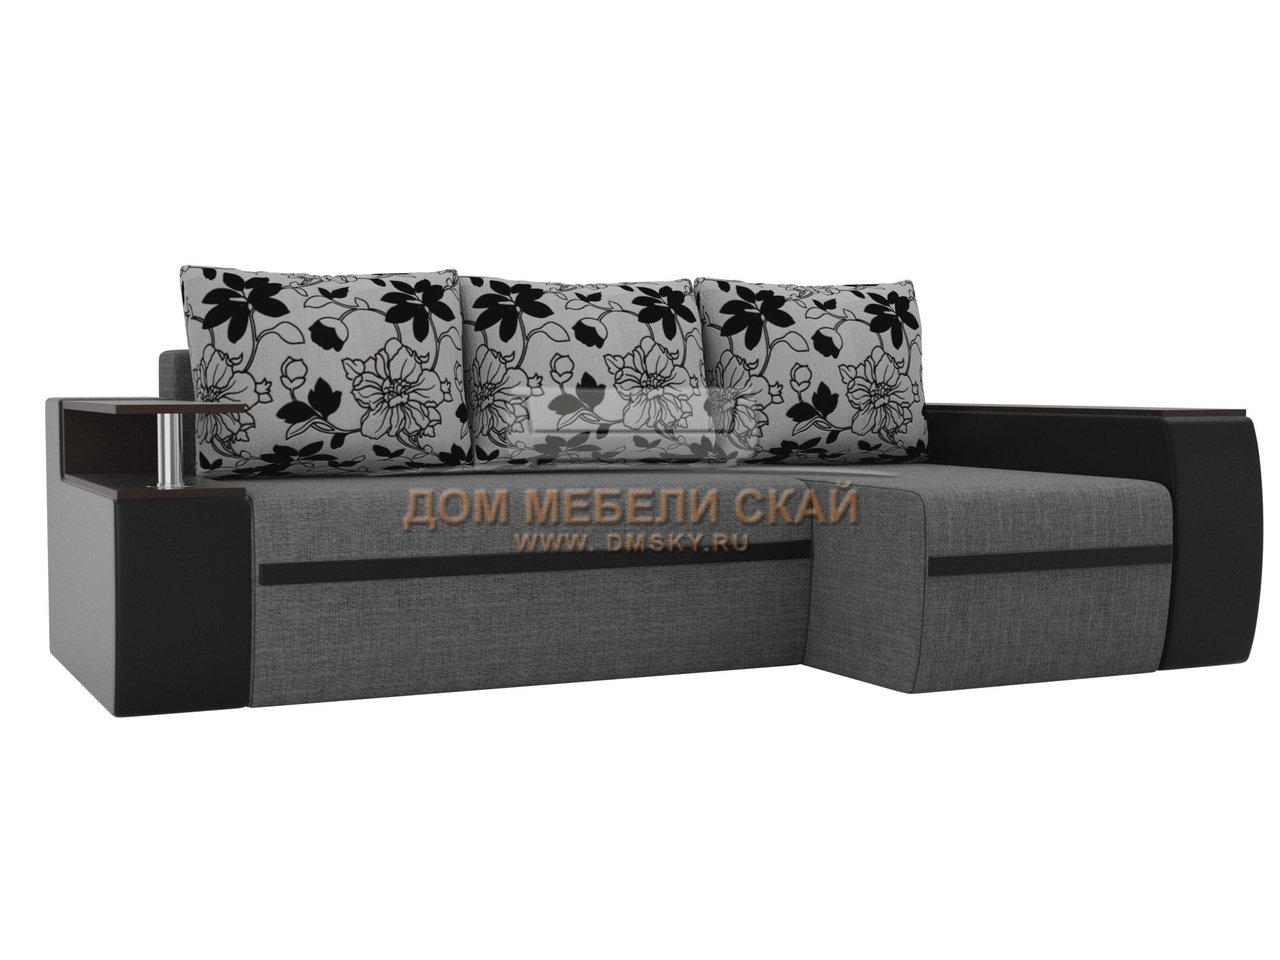 Угловой диван-кровать правый Ричмонд, серый/черный/цветы/рогожка/экокожа/флокна рогожке - купить в Москве недорого по цене 51 990 руб. (арт. B10025121)